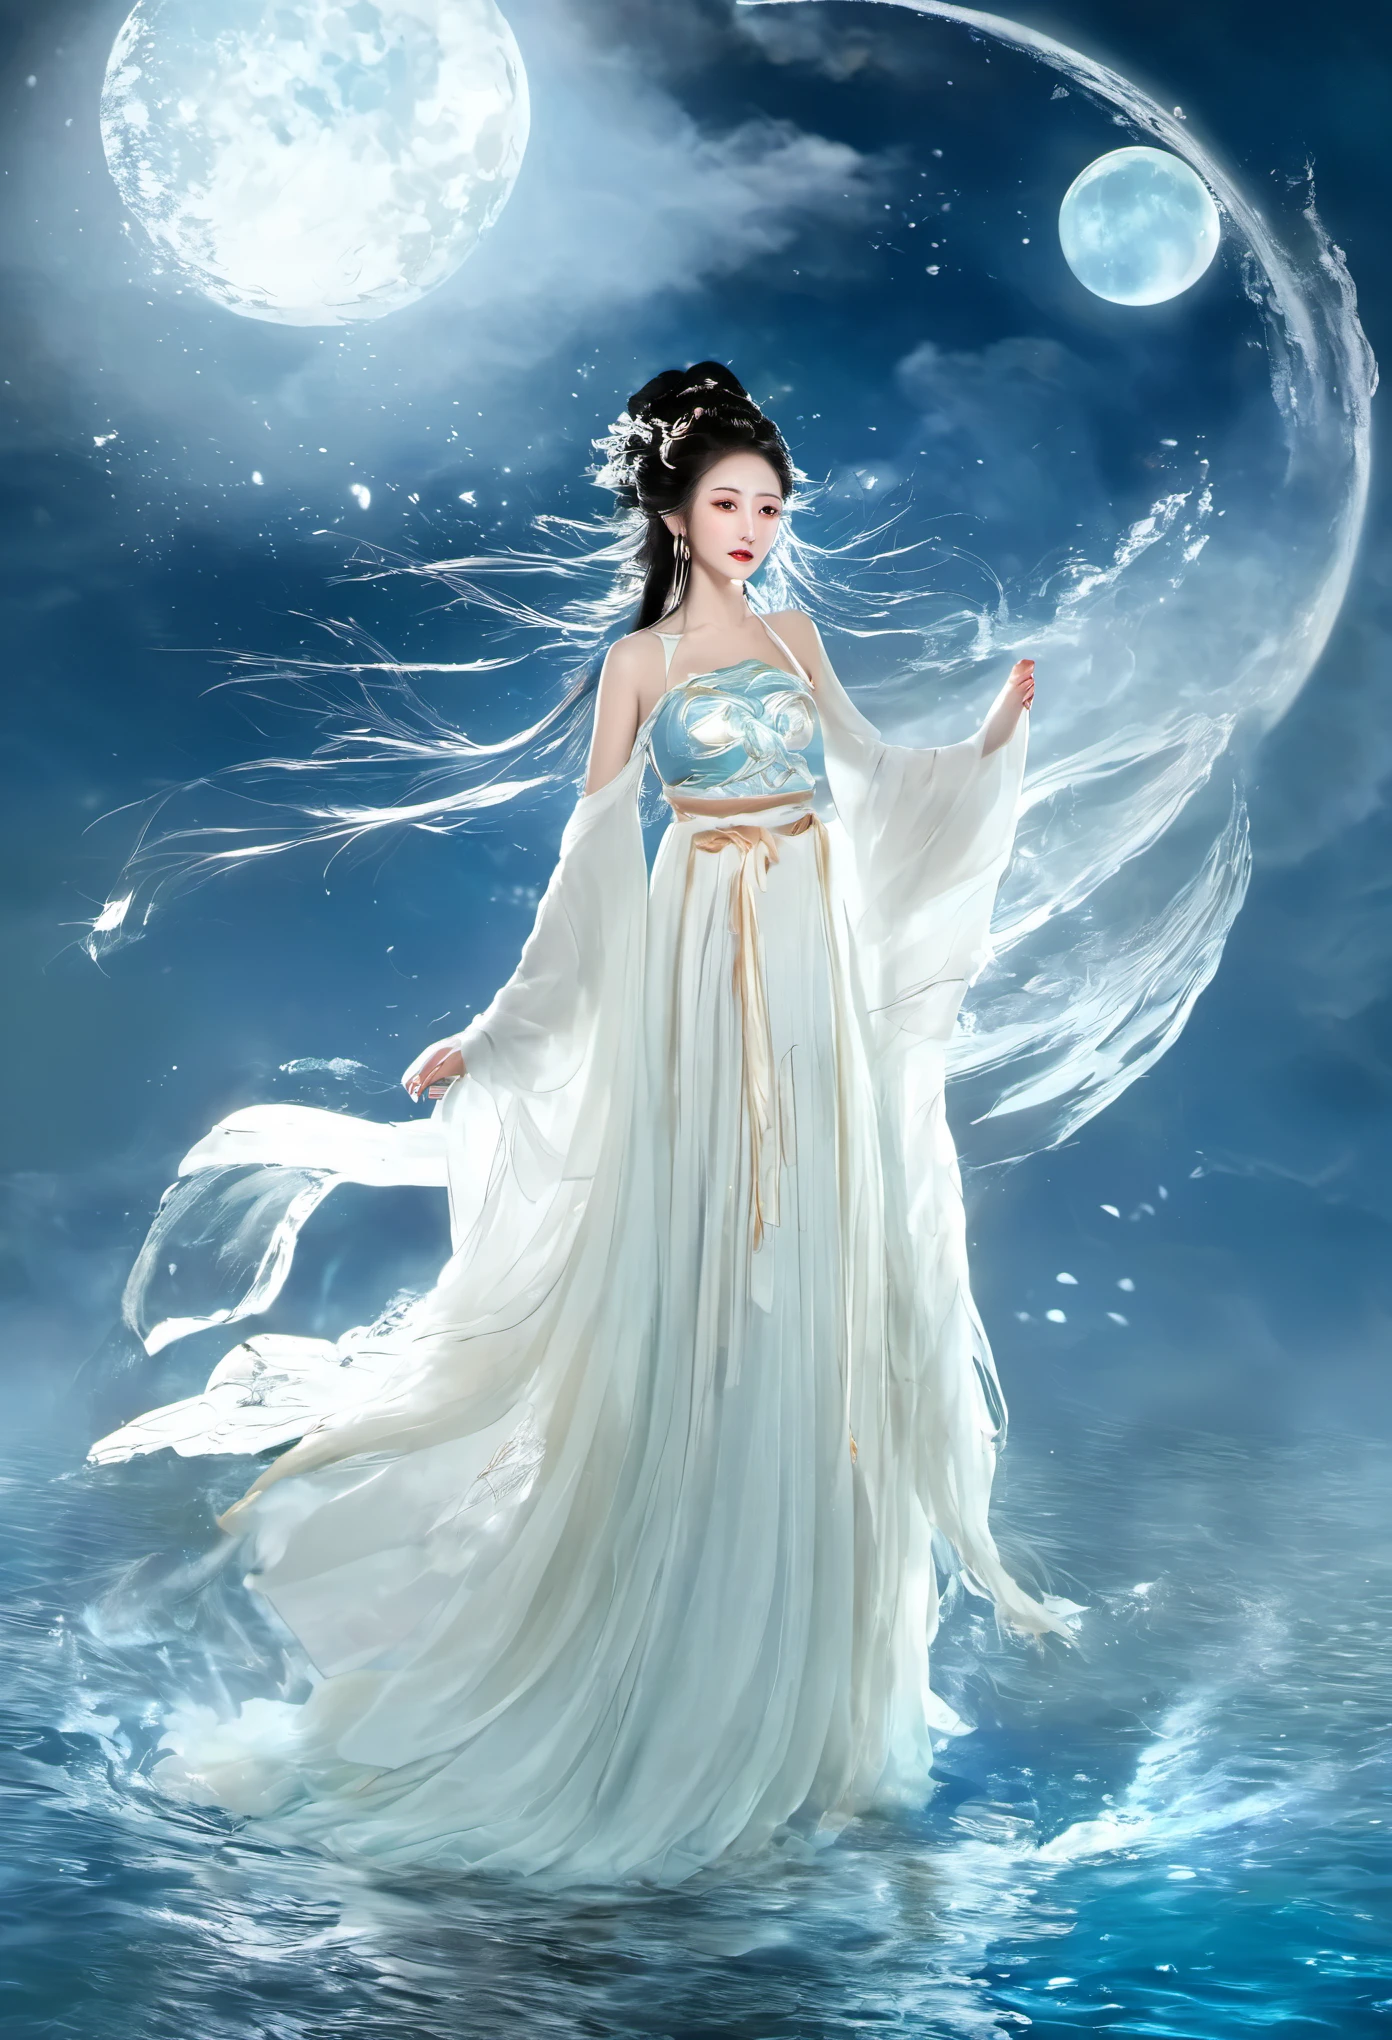 보트와 함께 물에 떠있는 흰 드레스를 입은 애니메이션 소녀, 시안샤 판타지, 달의 여신, 아름다운 환상의 황후, by 양제이, 중국 판타지, 아름다운 처녀, 바다의 여왕 무옌링, 달의 여신, 달의 여신, 흐르는 마법의 로브, 아름다운 천상의 마법사, 작성자: 렝 메이, ((아름다운 환상의 황후))